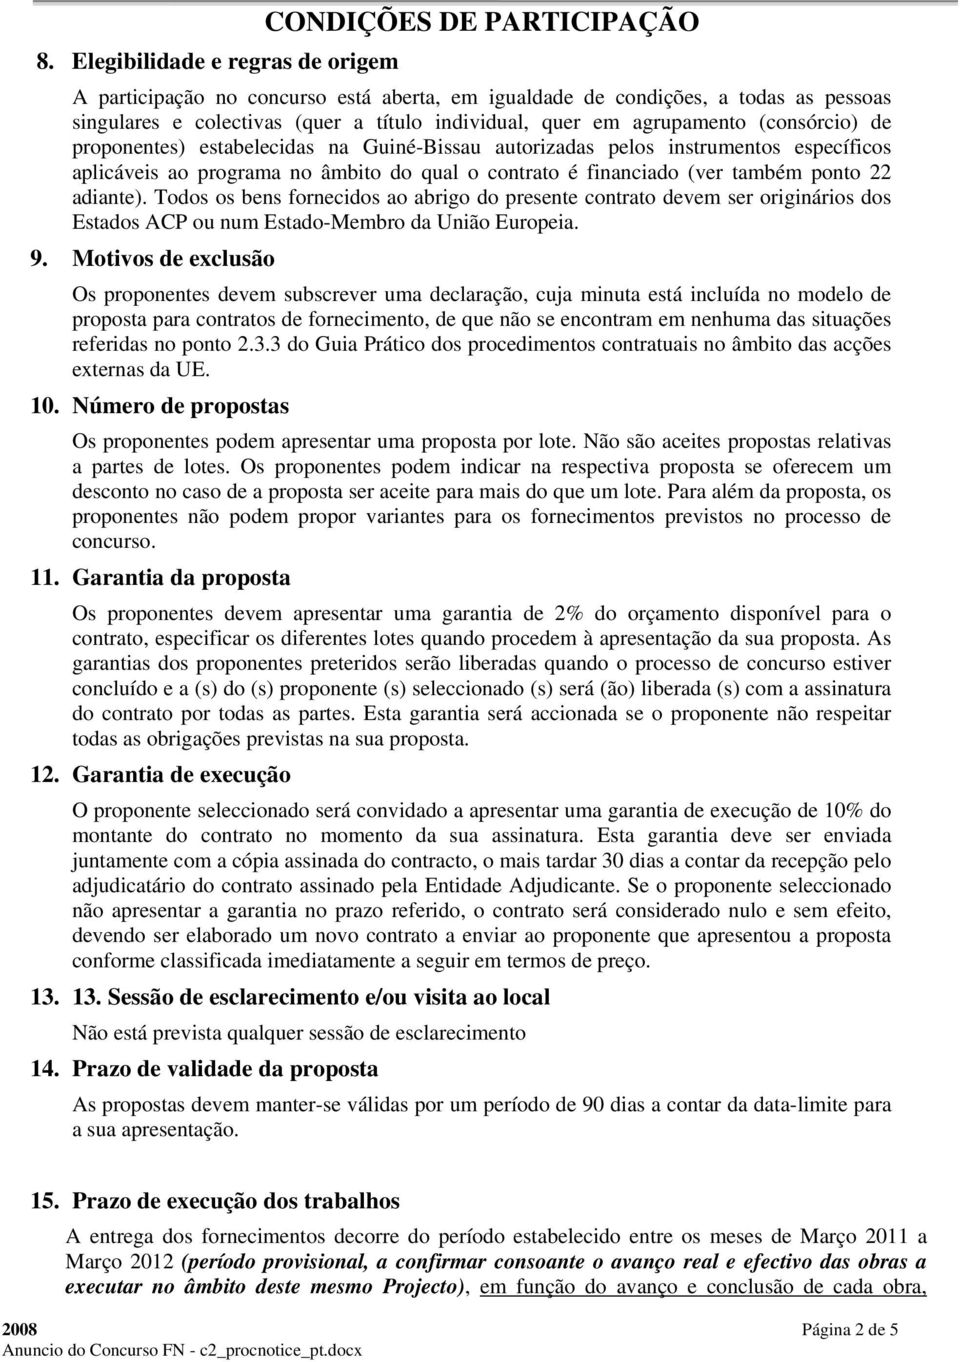 (consórcio) de proponentes) estabelecidas na Guiné-Bissau autorizadas pelos instrumentos específicos aplicáveis ao programa no âmbito do qual o contrato é financiado (ver também ponto 22 adiante).